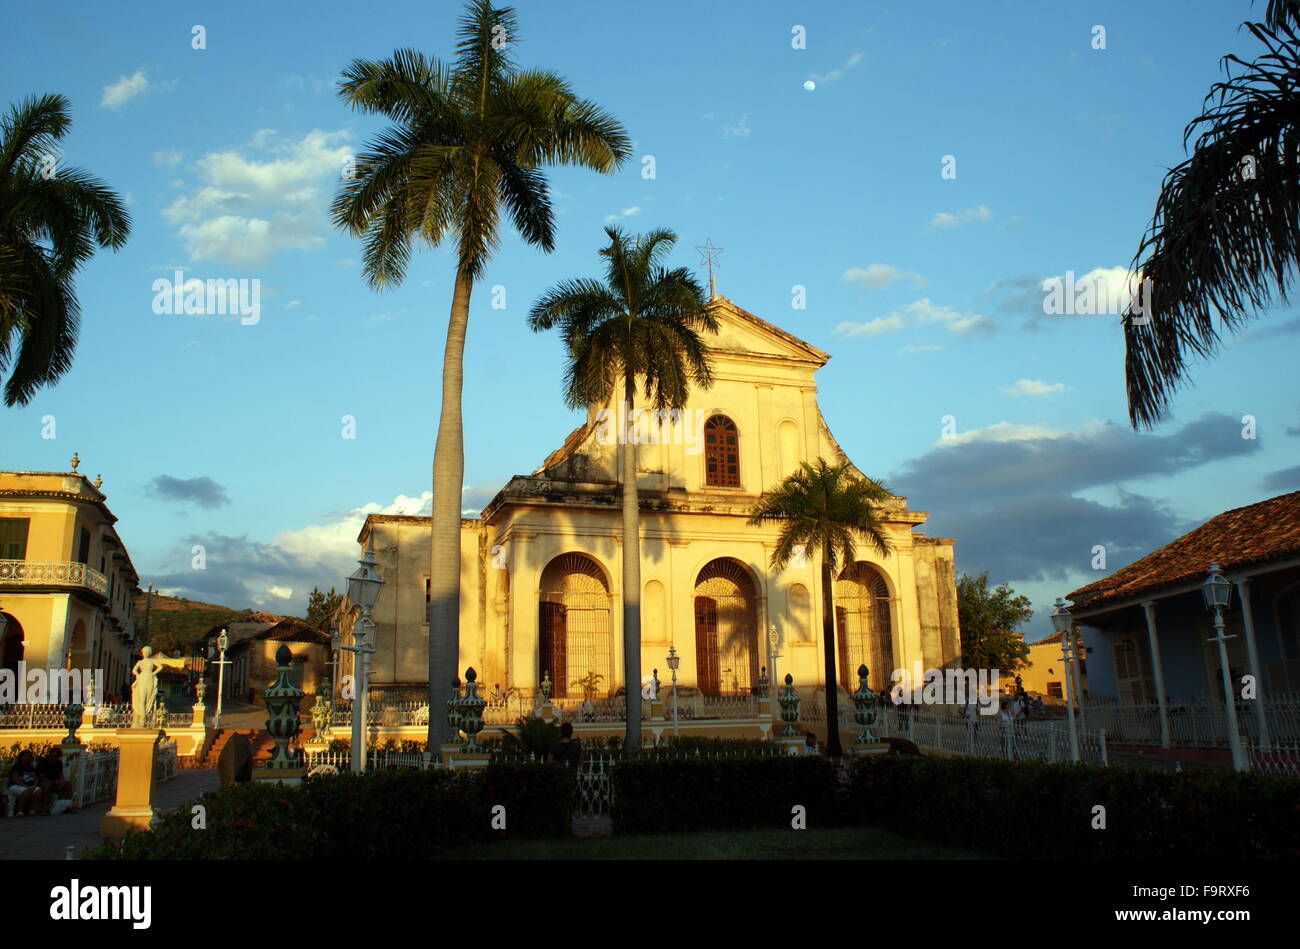 Church of the Holy Trinity, Plaza Mayor, Trinidad, Cuba Stock Photo